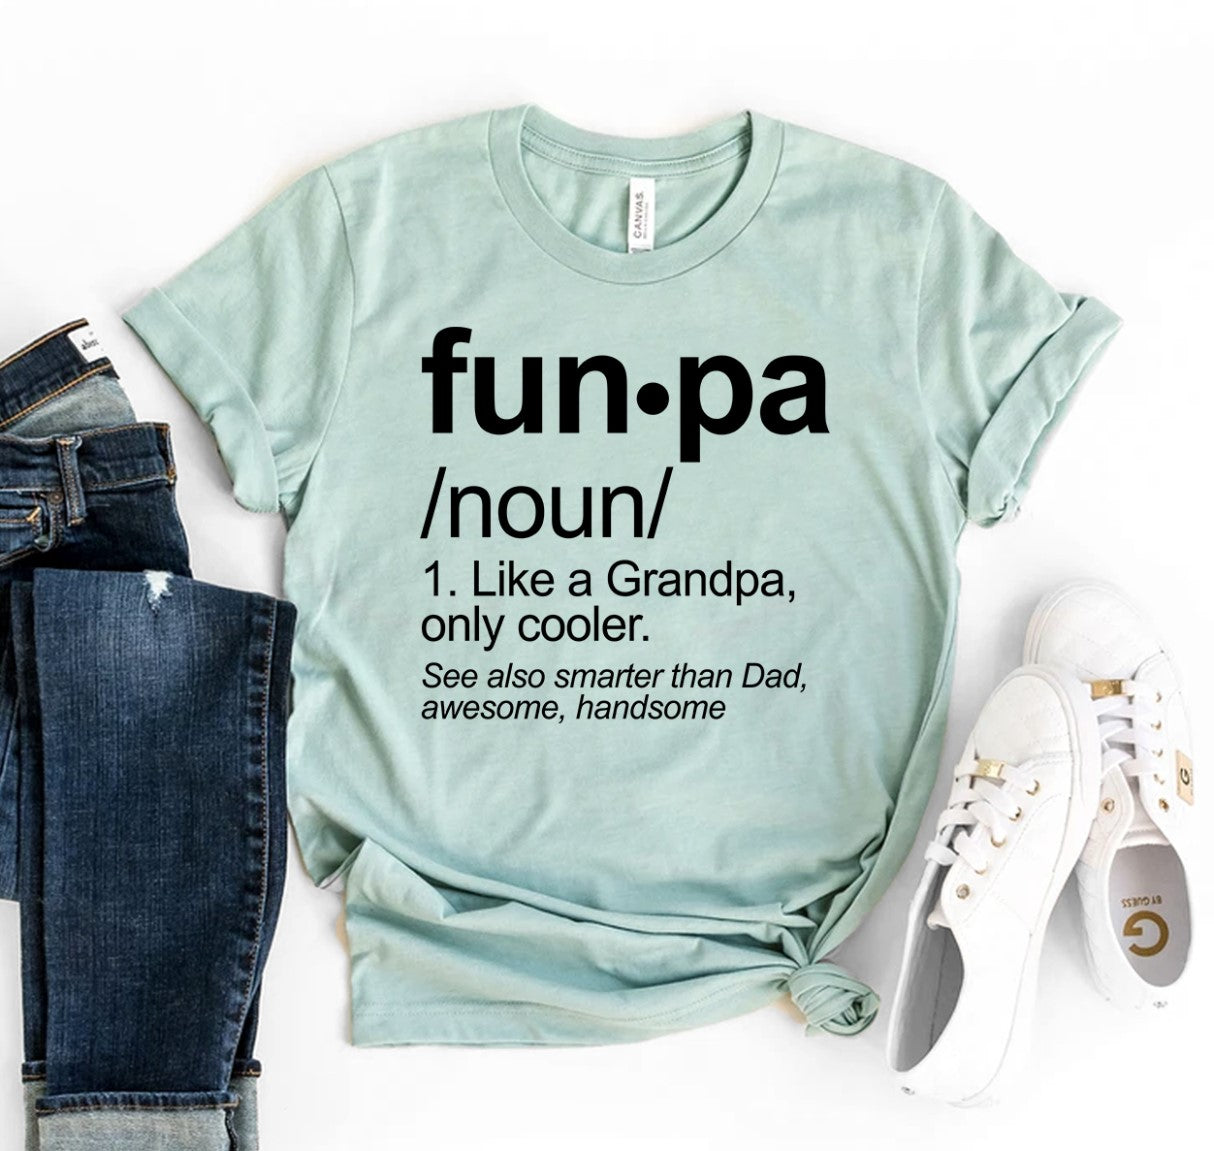 Funpa T-Shirt